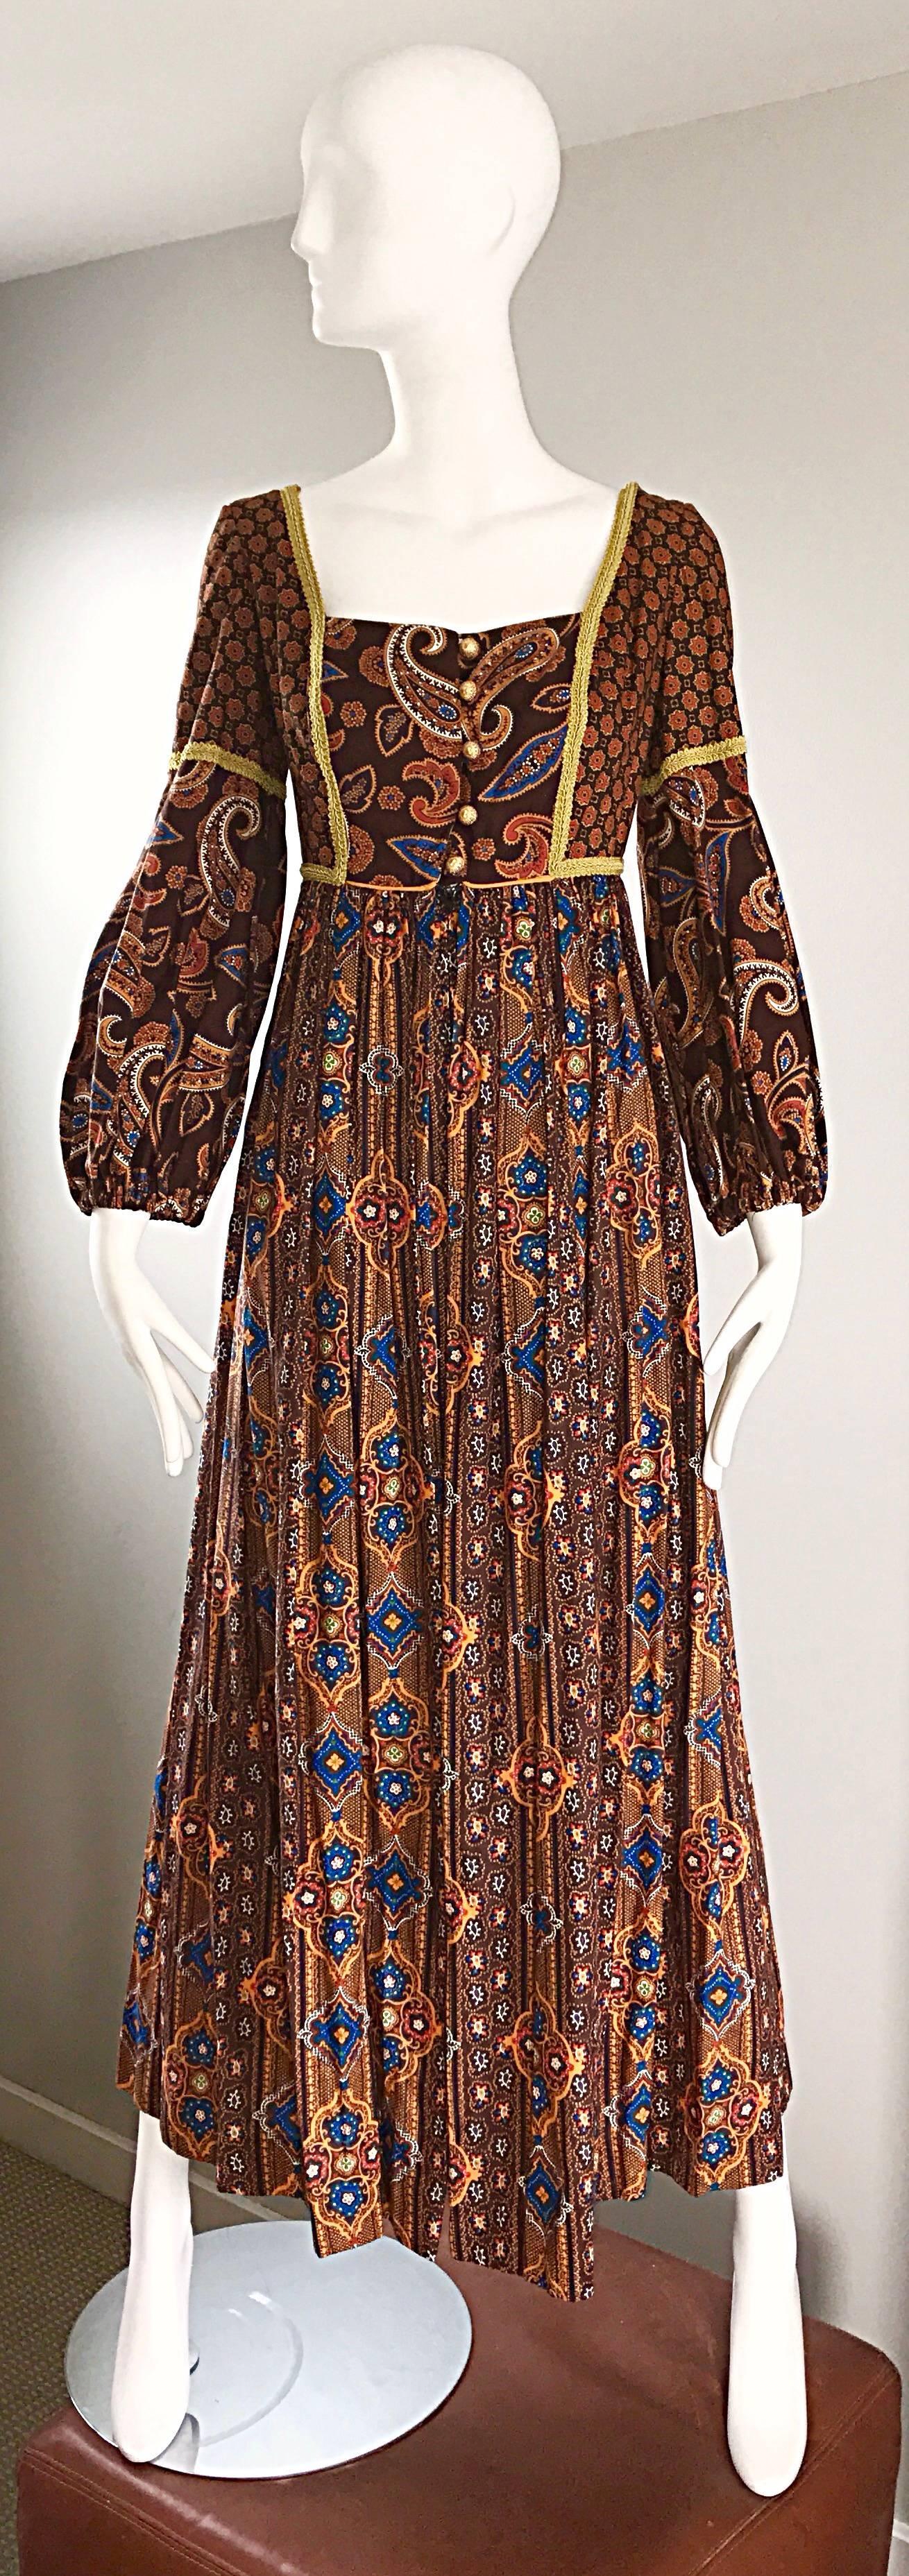 70s boho dress